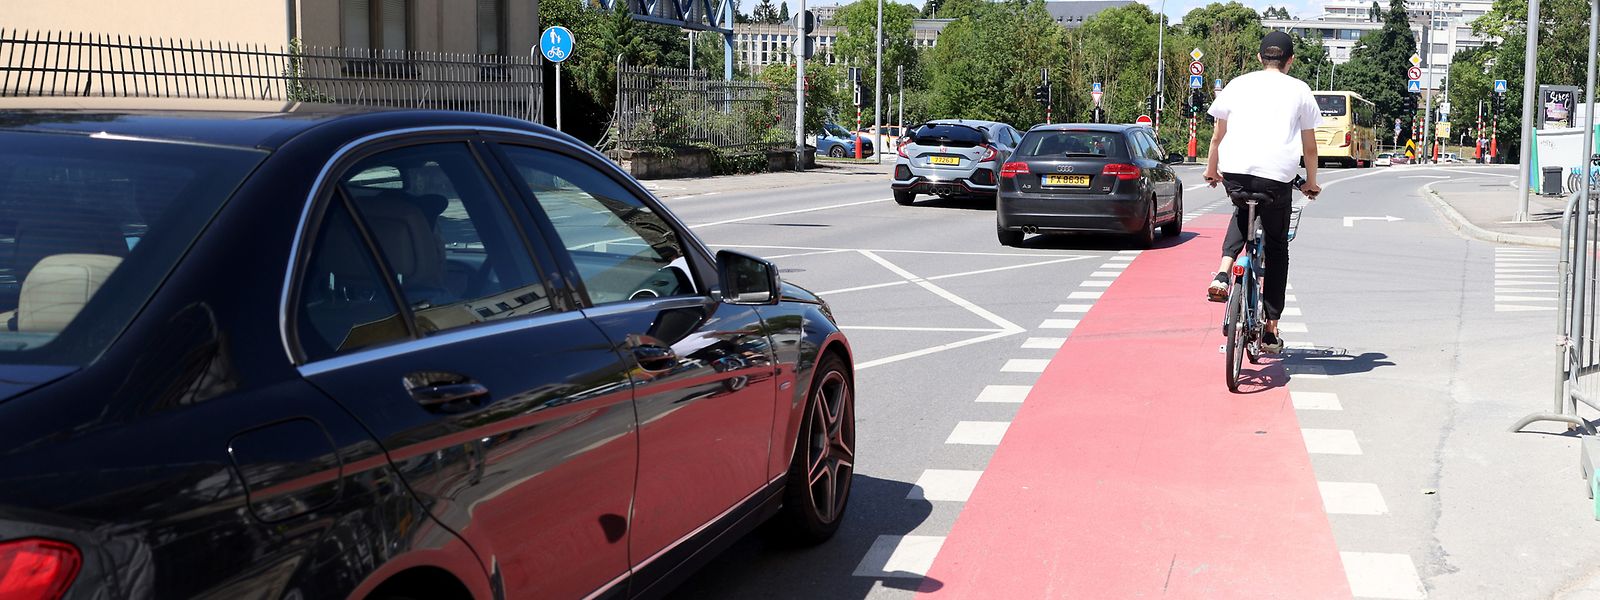 In mehreren Gemeinden, wie hier in der Hauptstadt, gibt es bereits seit Jahren an Gefahrenstellen rot markierte Fahrradspuren – auch ohne entsprechende gesetzliche Grundlage. 